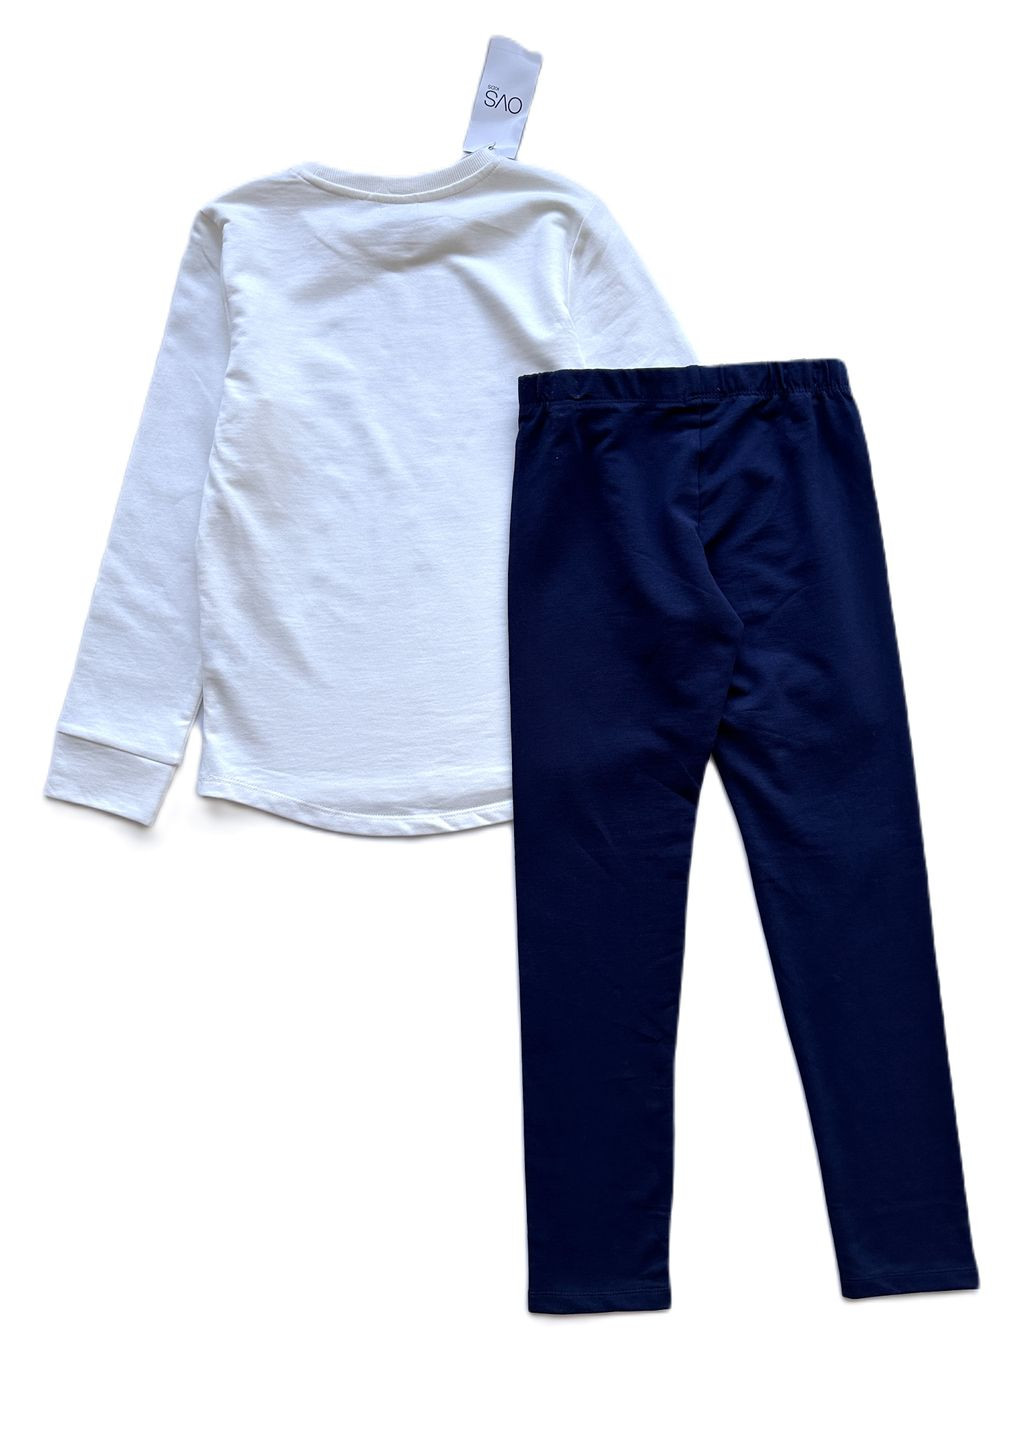 Белый демисезонный комплект для девочки свитшот удлиненный белый + леггинсы темно-синие 2000-35 (134 см) OVS